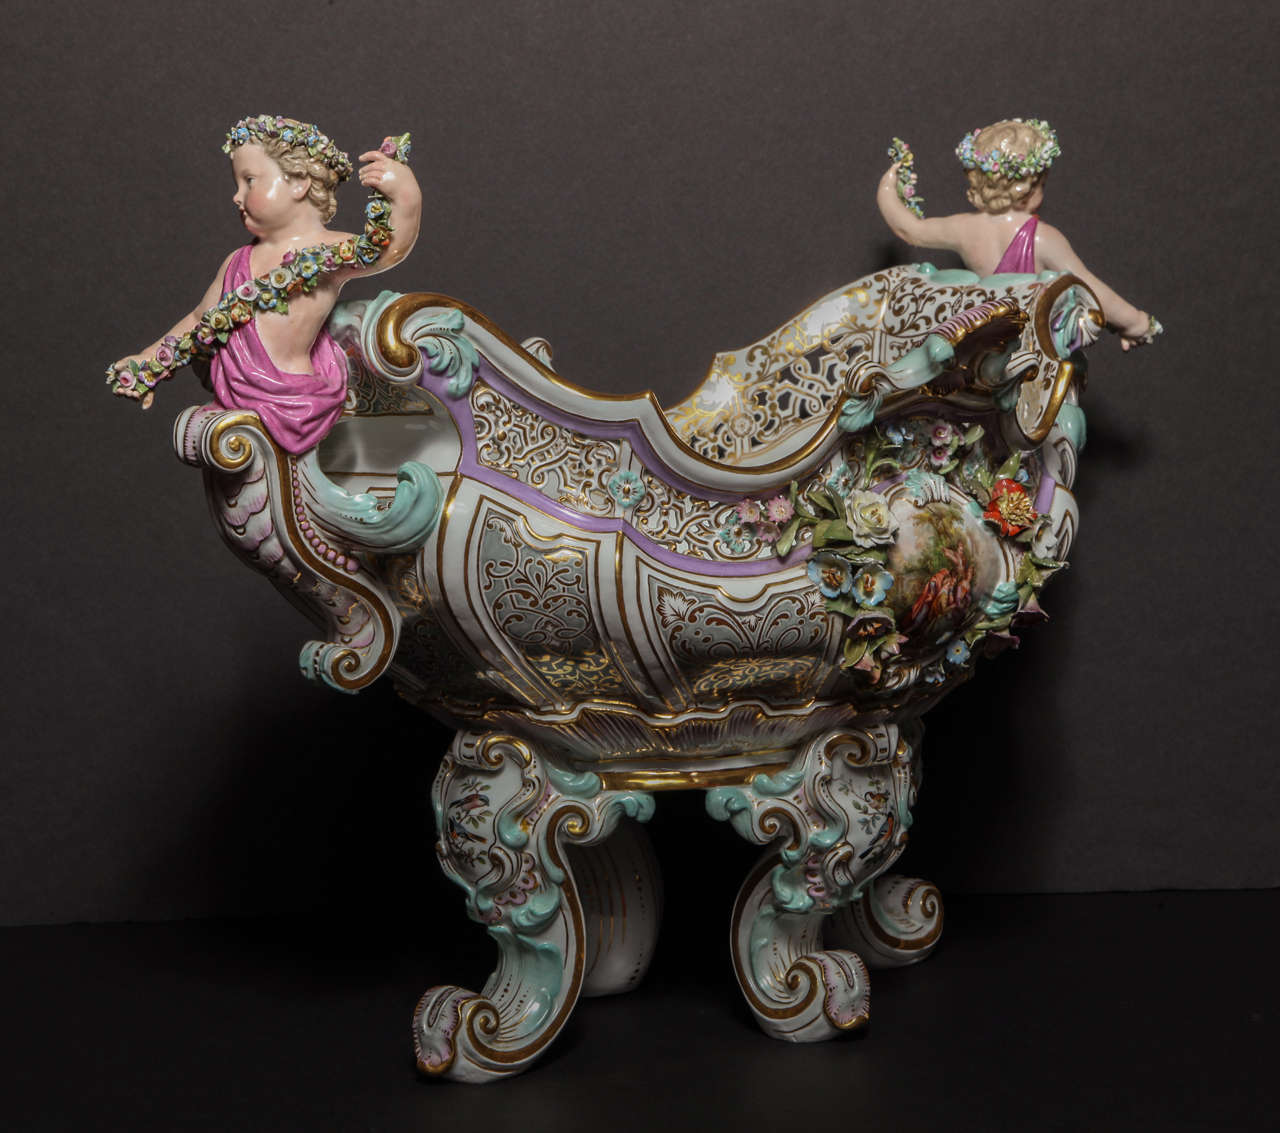 A Palatial Antique German Meissen Porcelain Figural Centerpiece 1